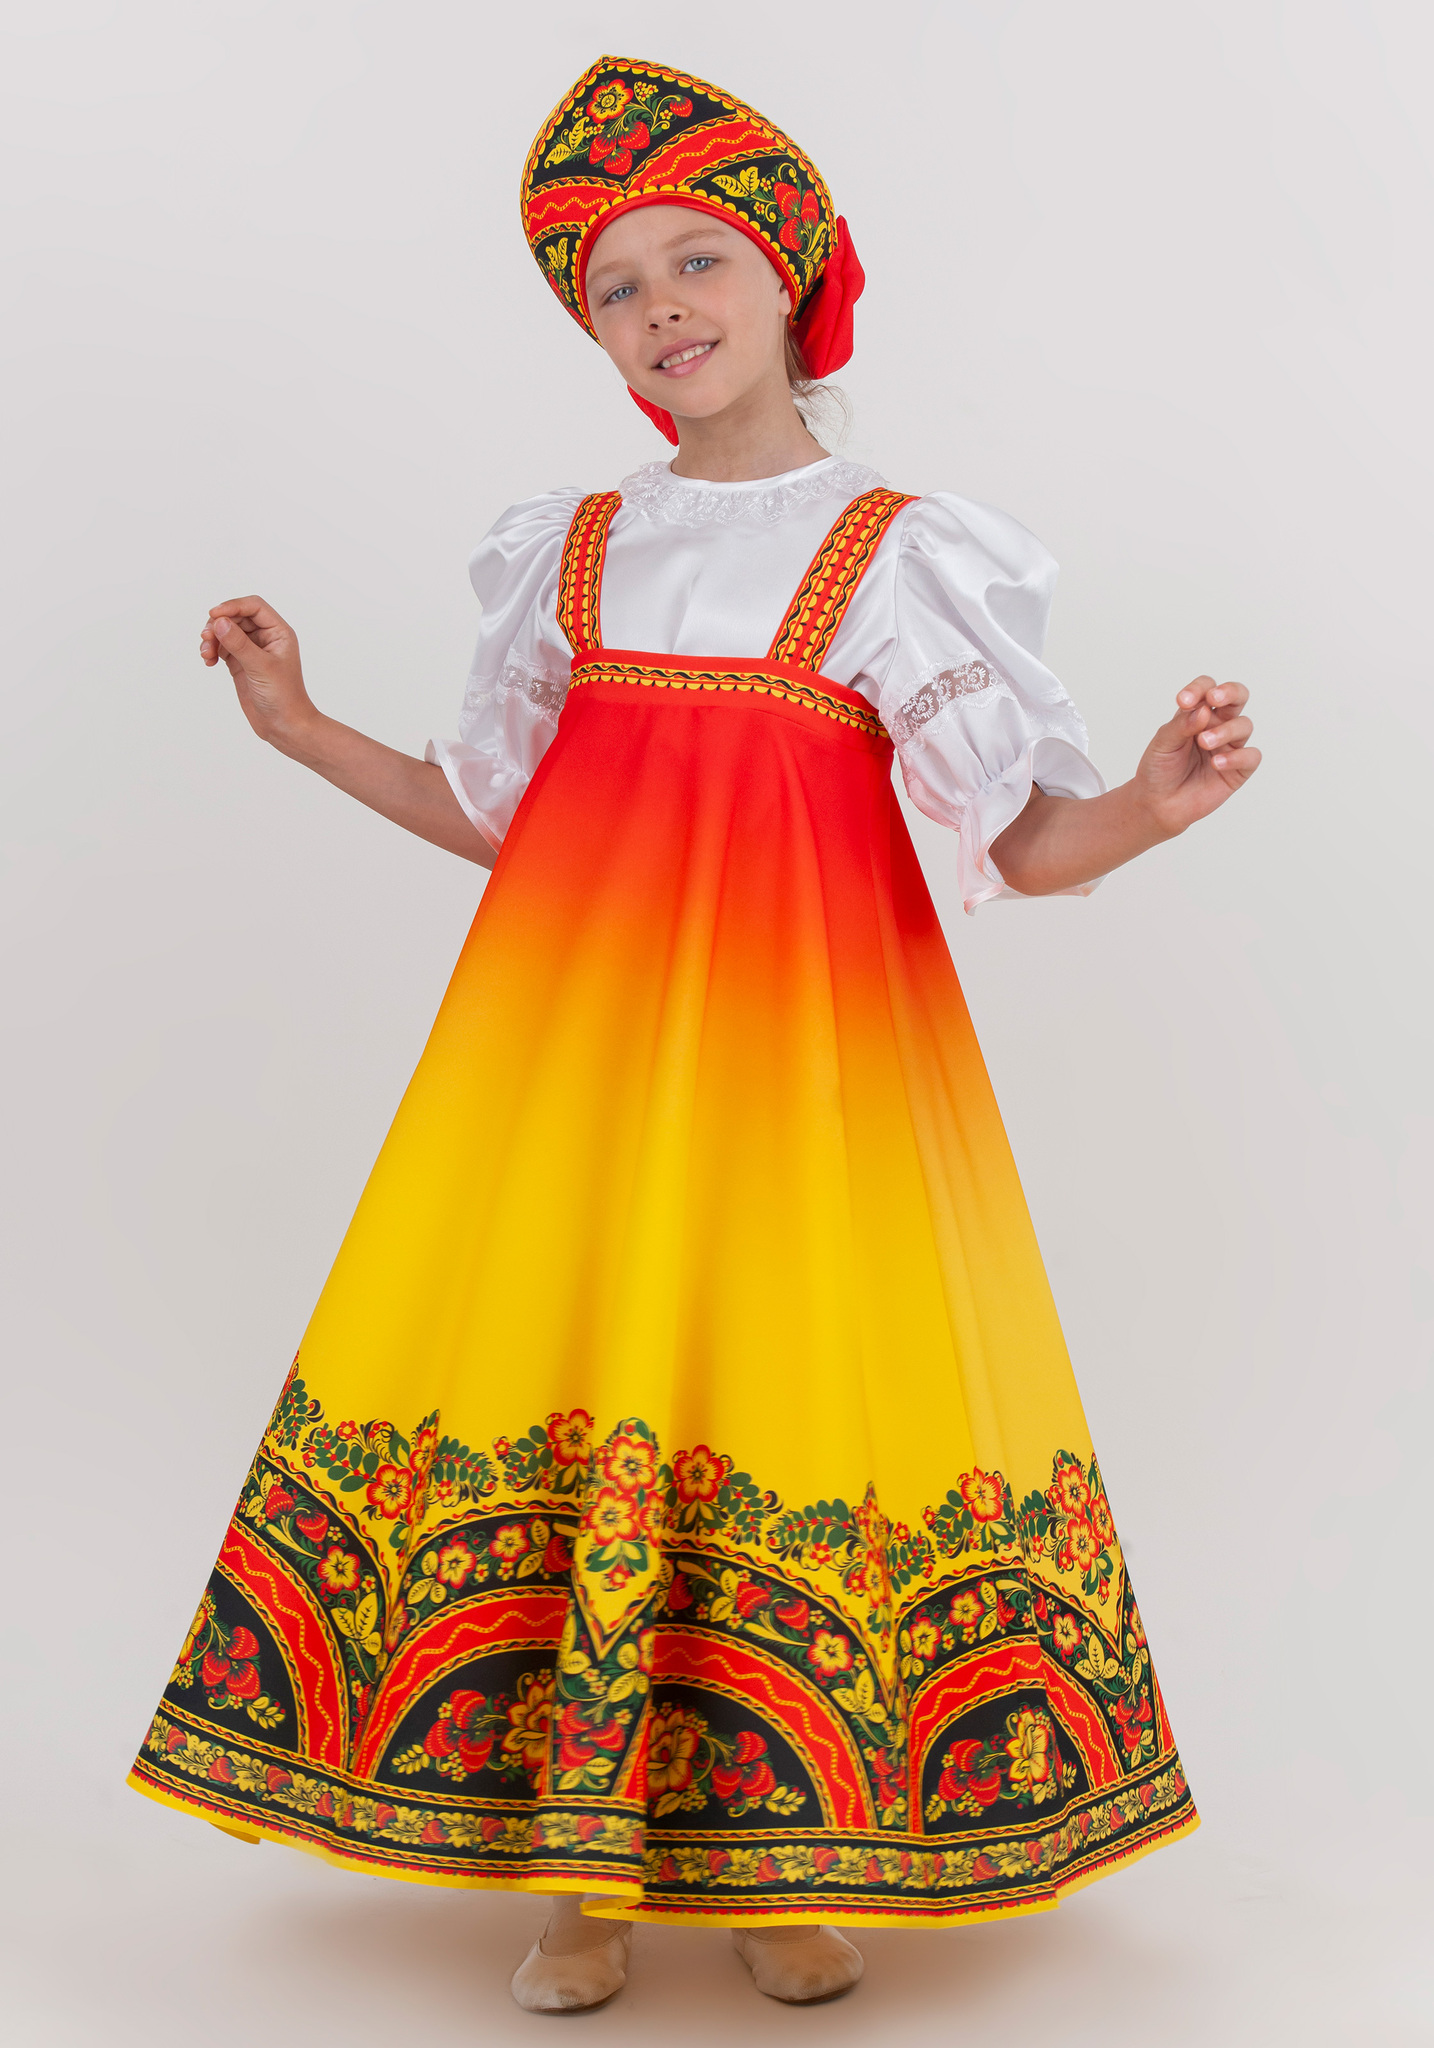 Русский народный костюм для девочки купить - вариантов